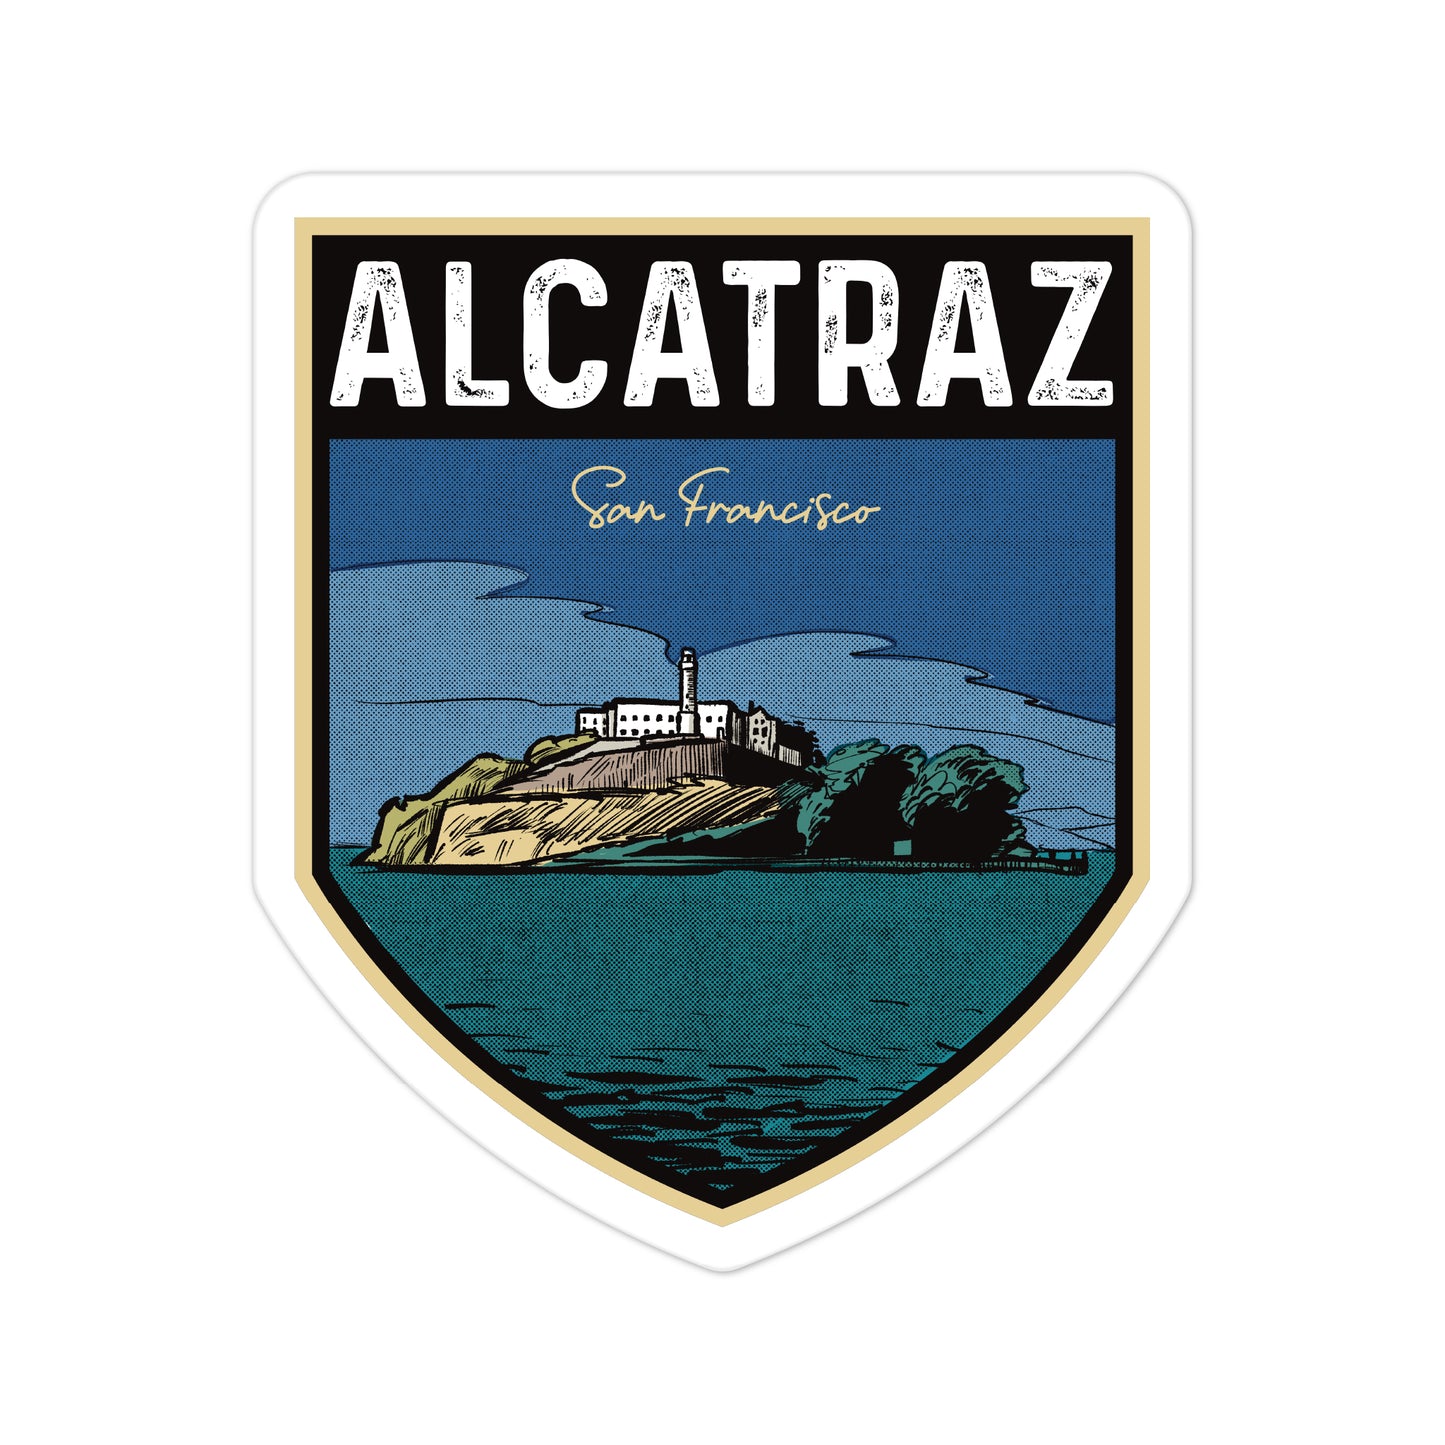 A sticker of Alcatraz California